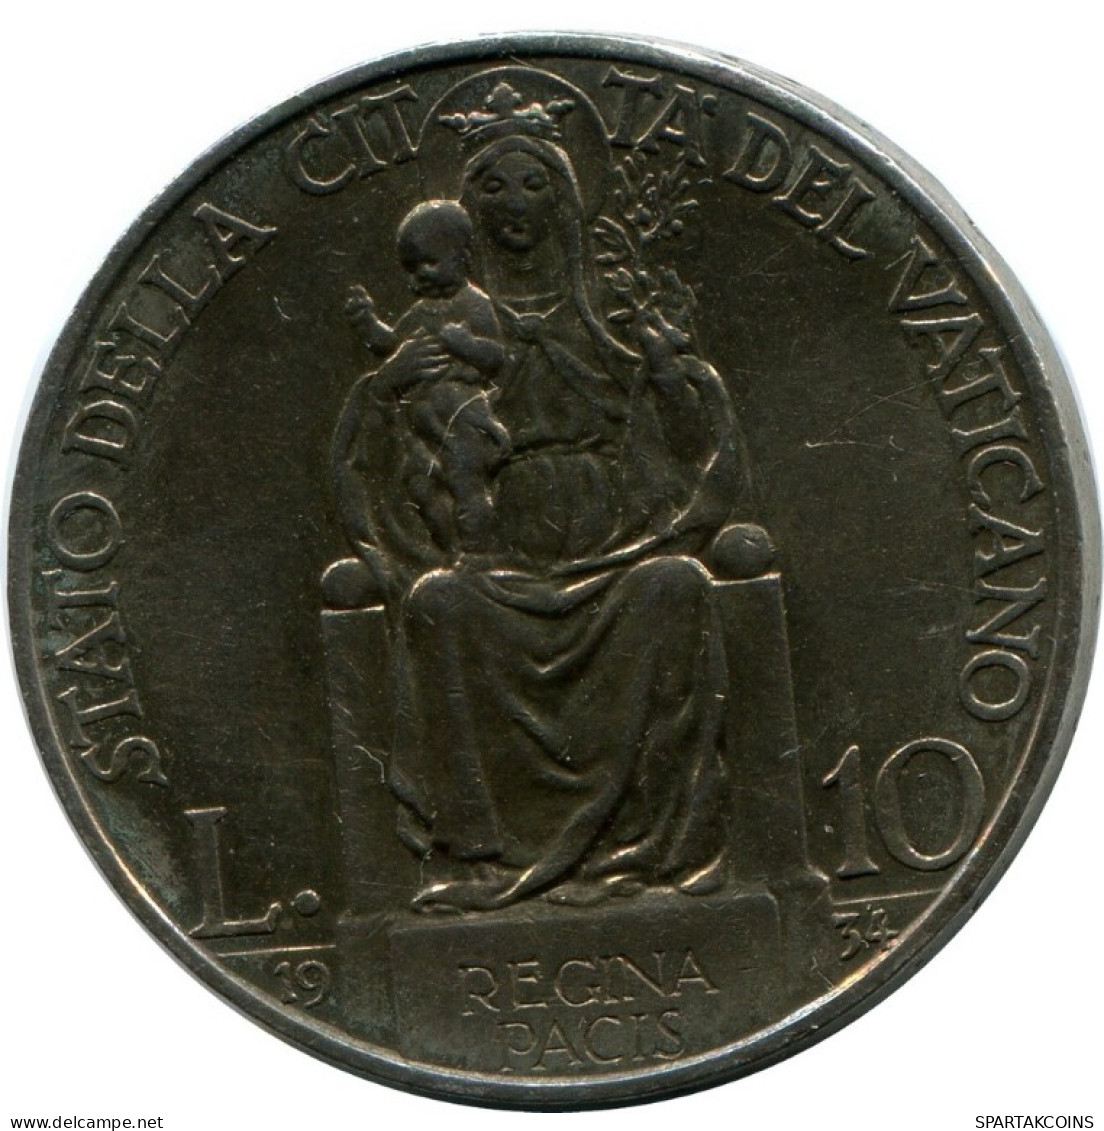 10 LIRE 1934 VATIKAN VATICAN Münze Pius XI (1922-1939) SILBER #AH306.16.D.A - Vatikan